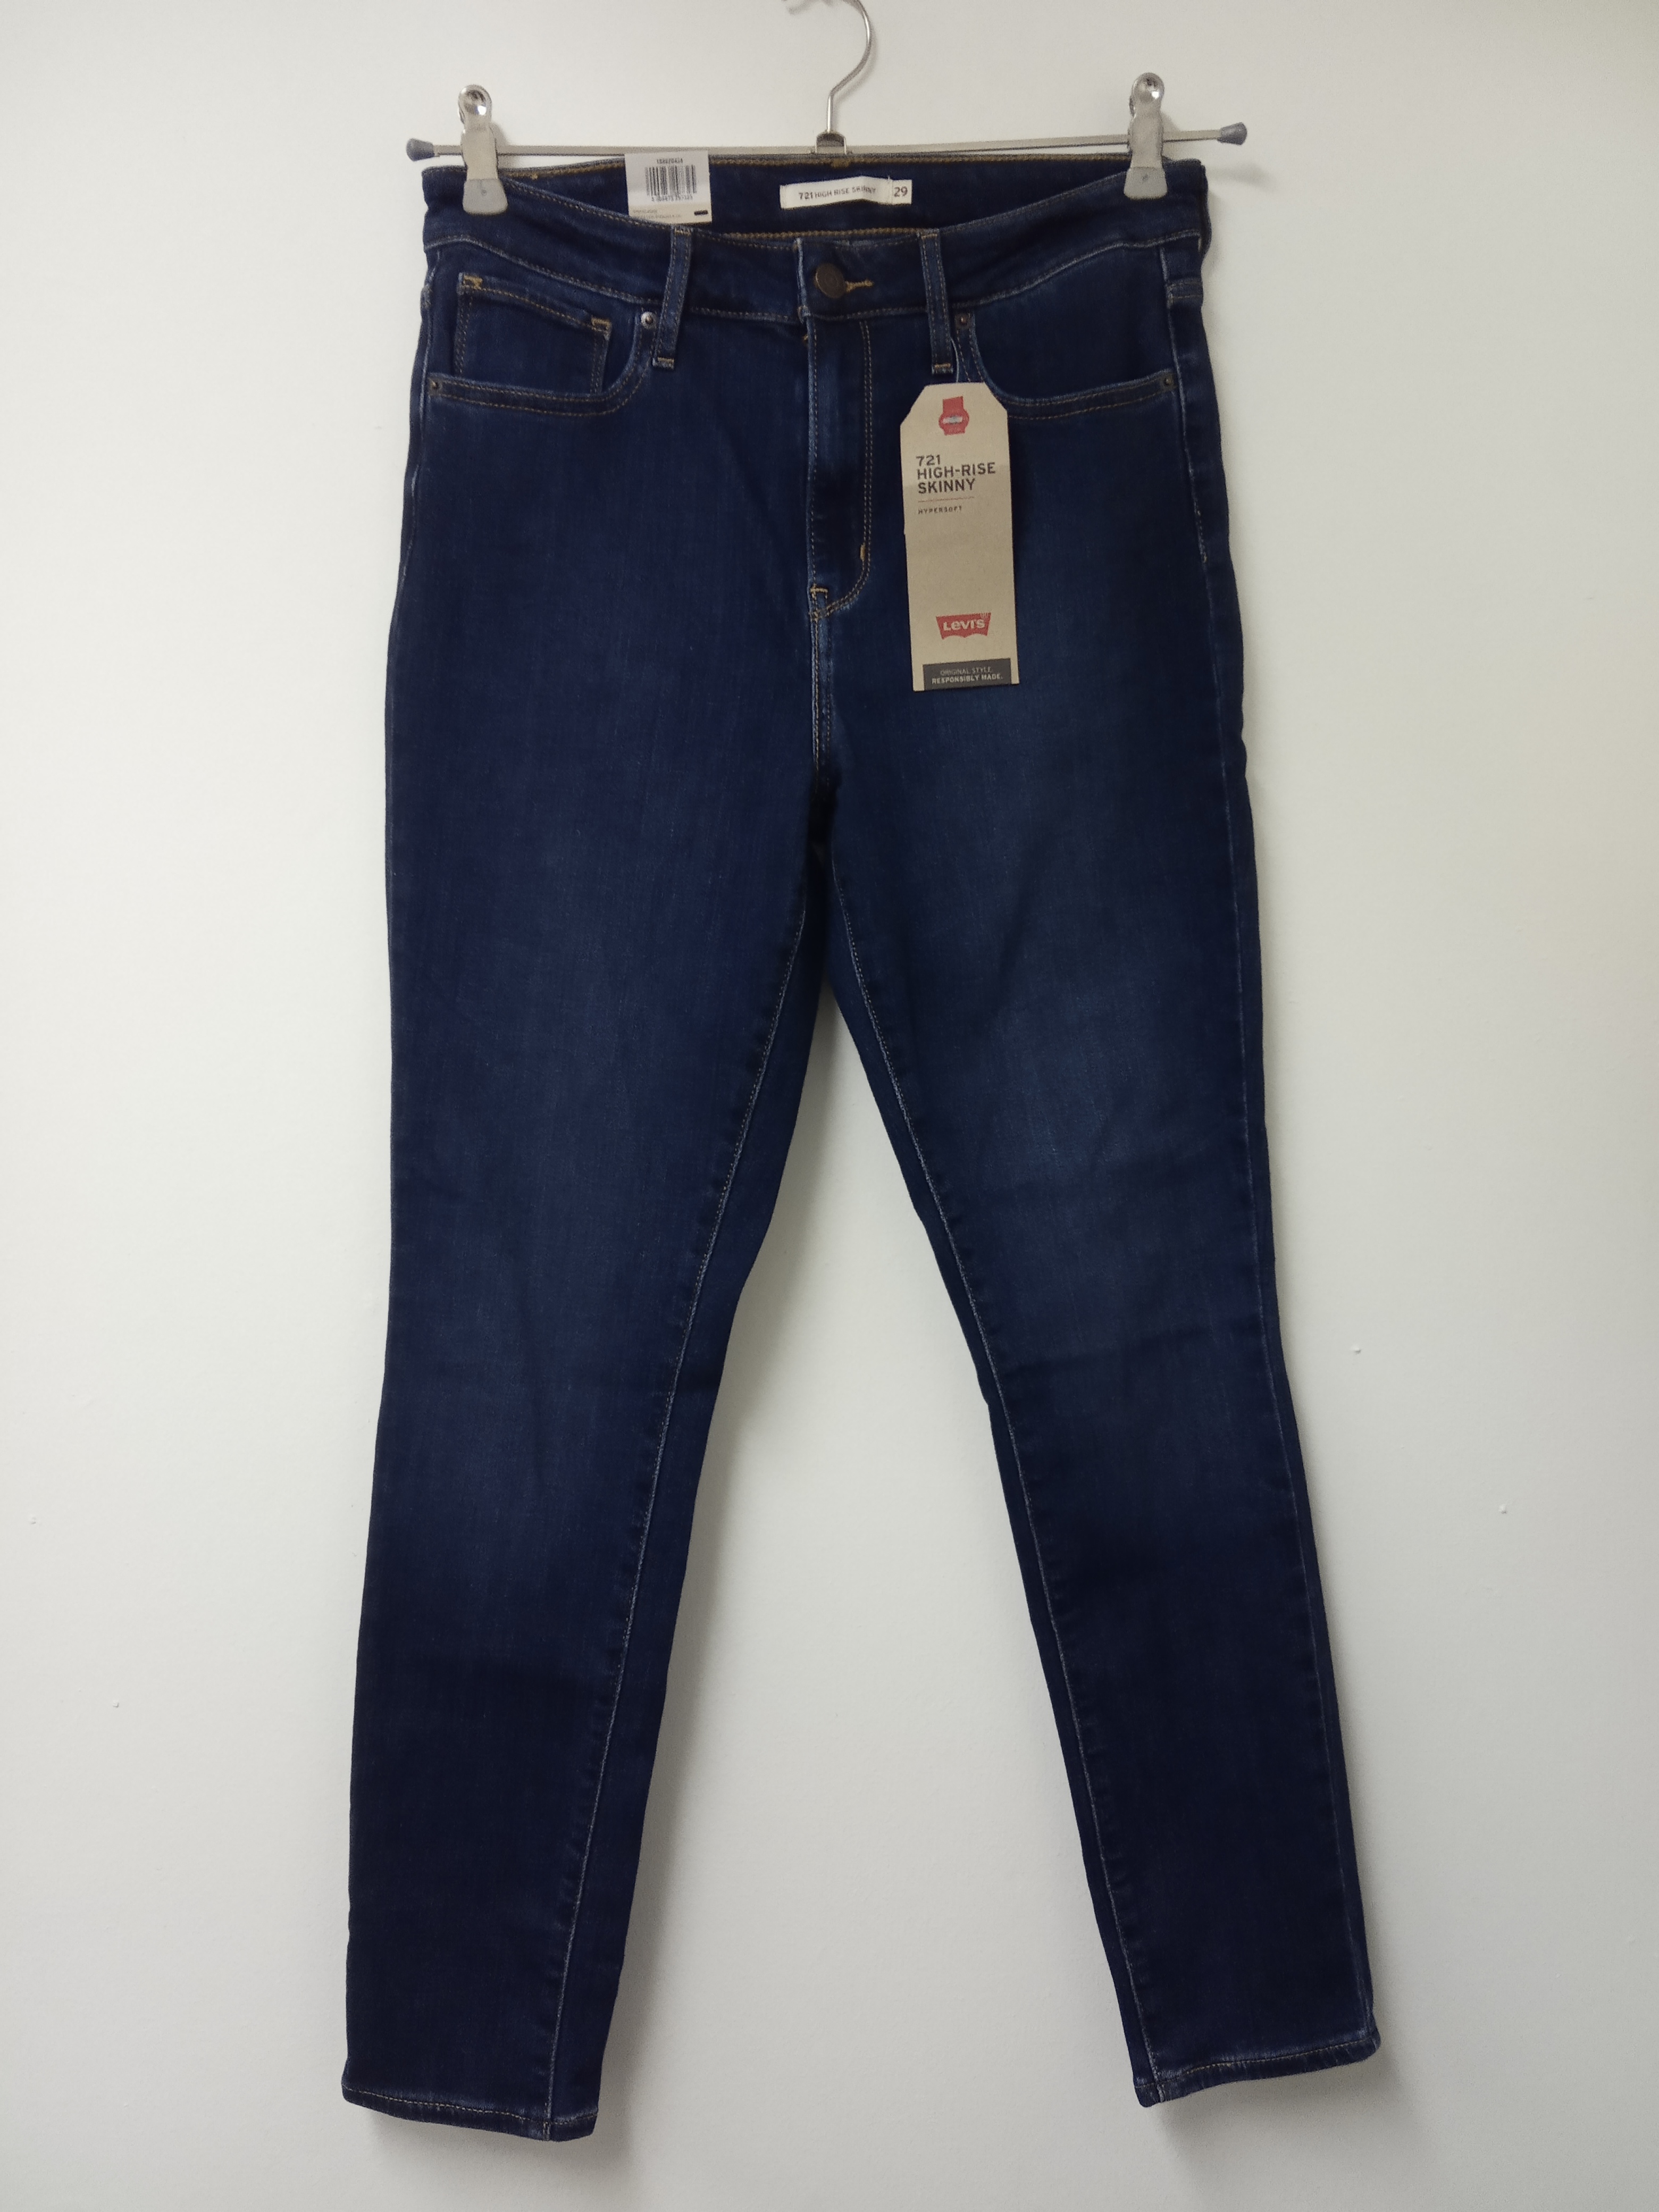 תמונה 2 ,ג'ינס ליווייס מידה 29 חדש למכירה בתל אביב ביגוד ואביזרים  ג'ינסים ומכנסיים